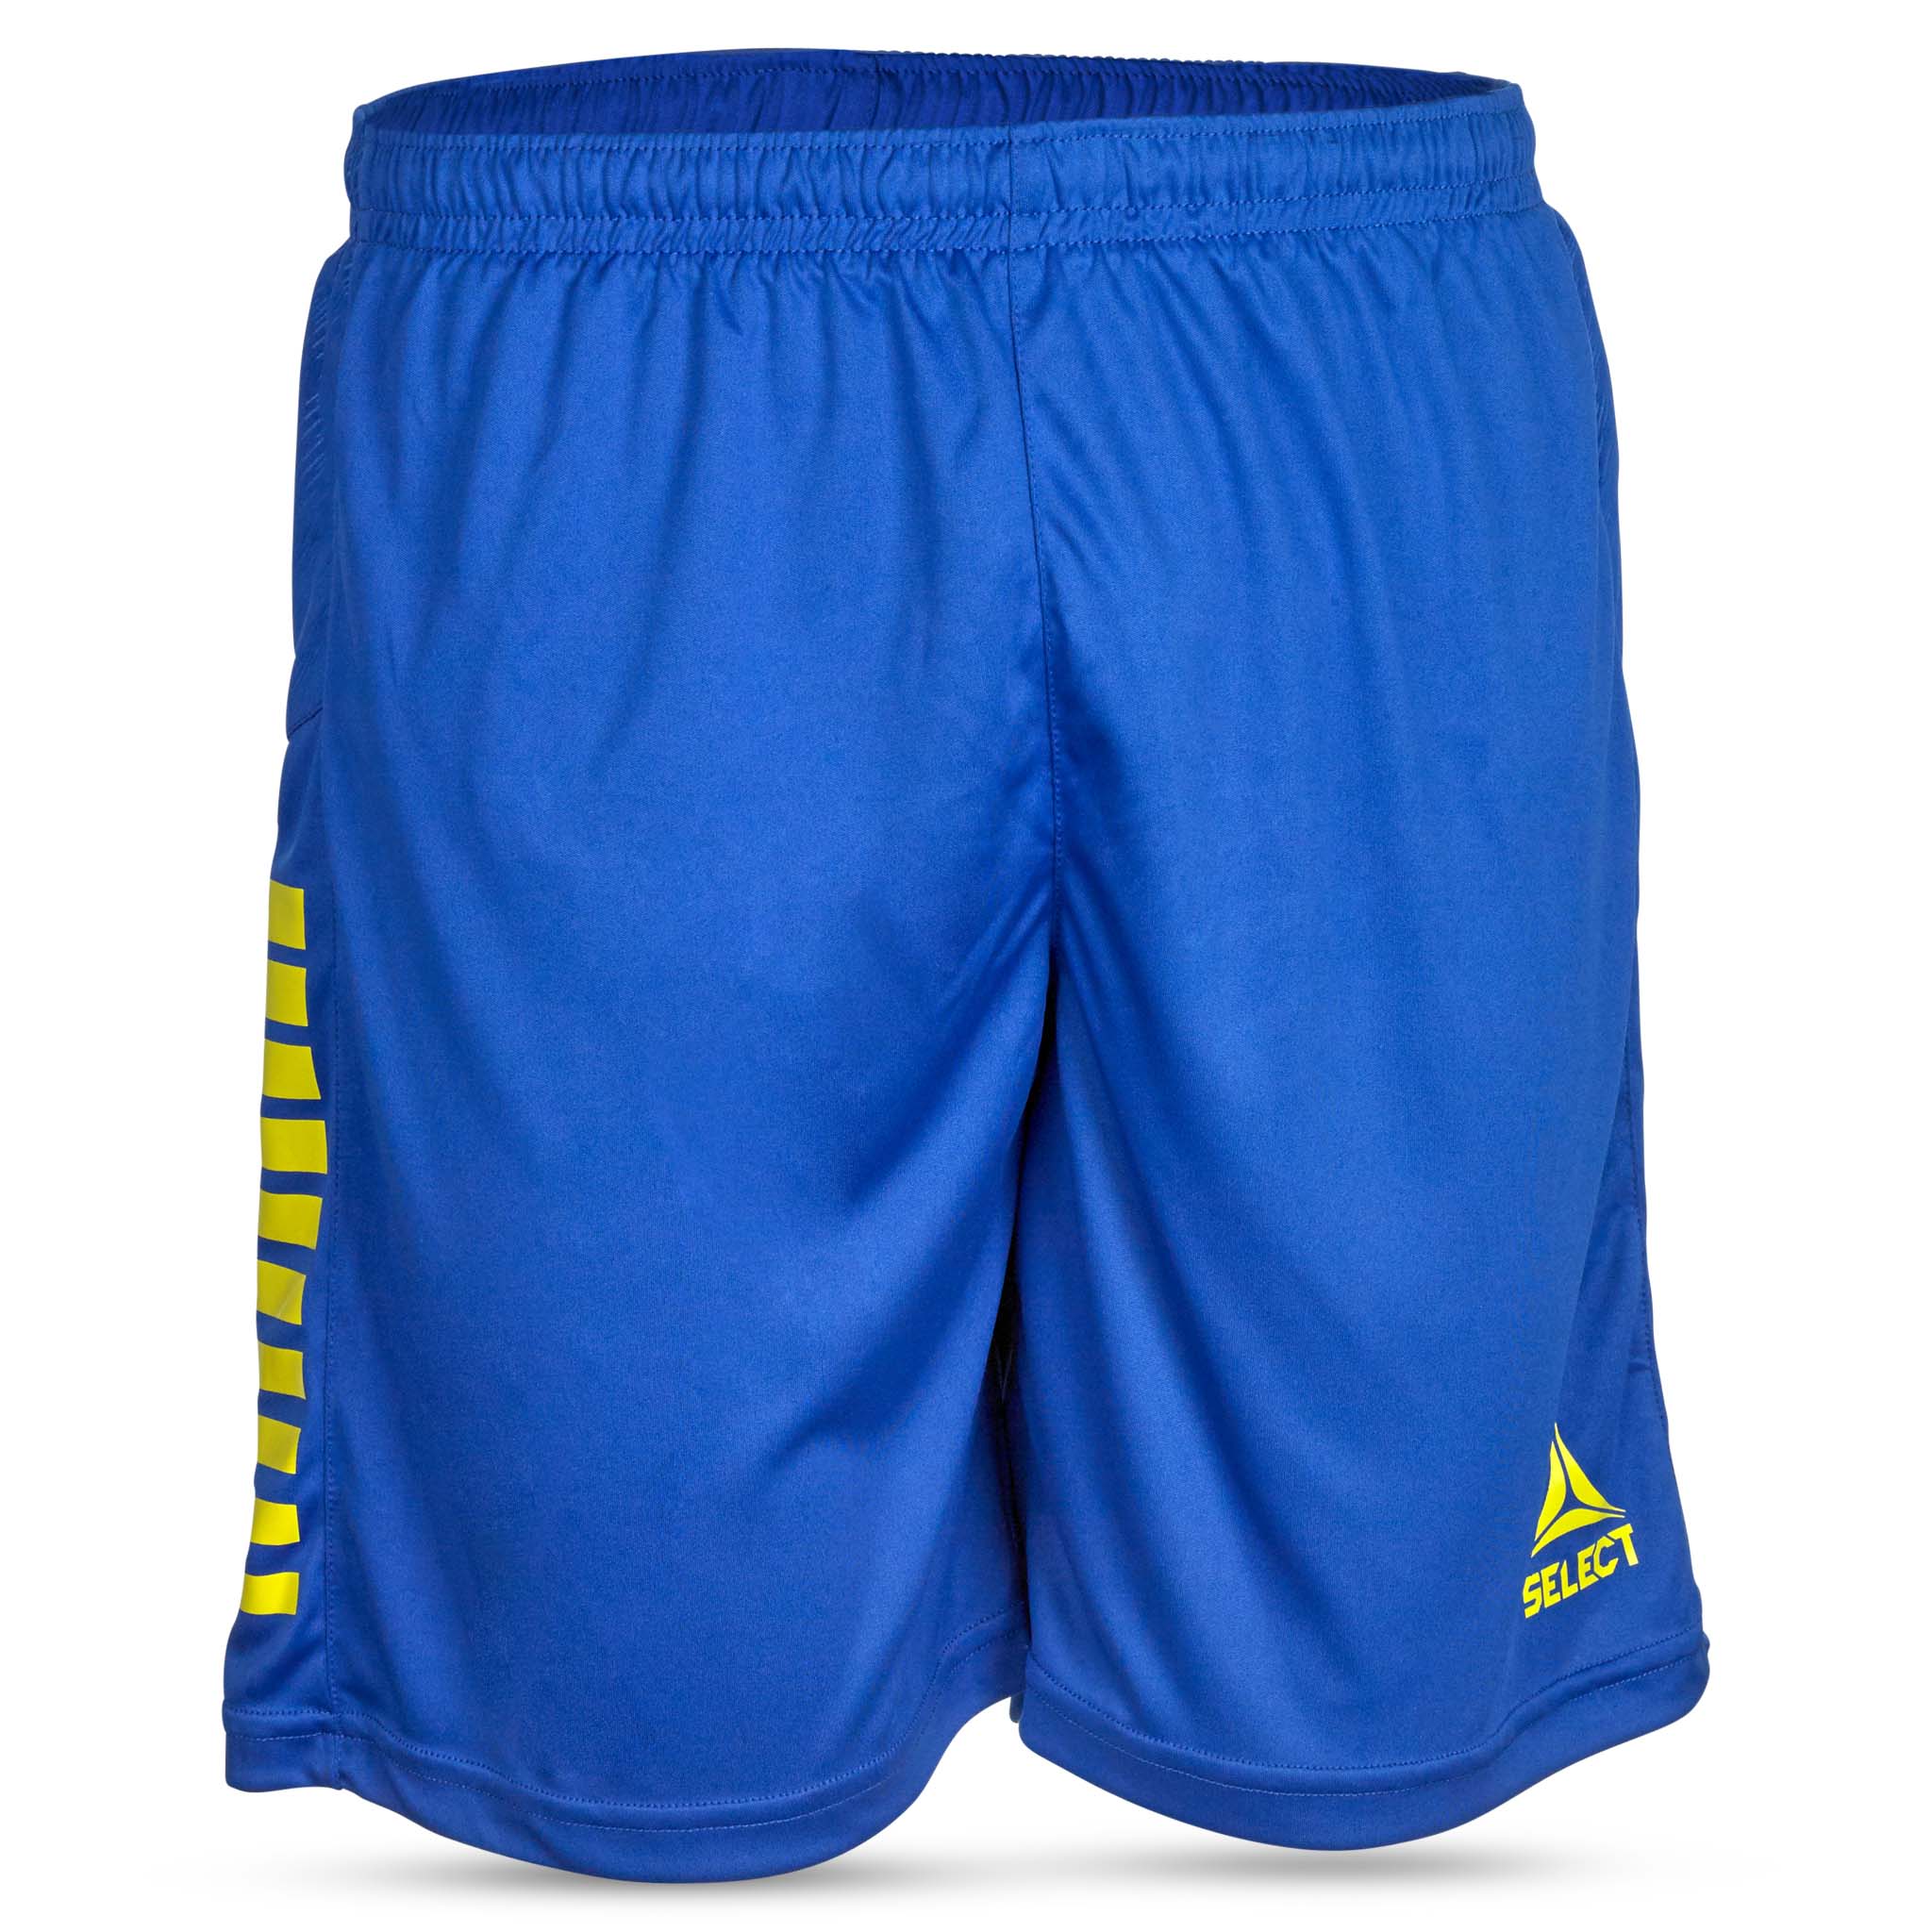 Spain Shorts - Barn #färg_blå/gul